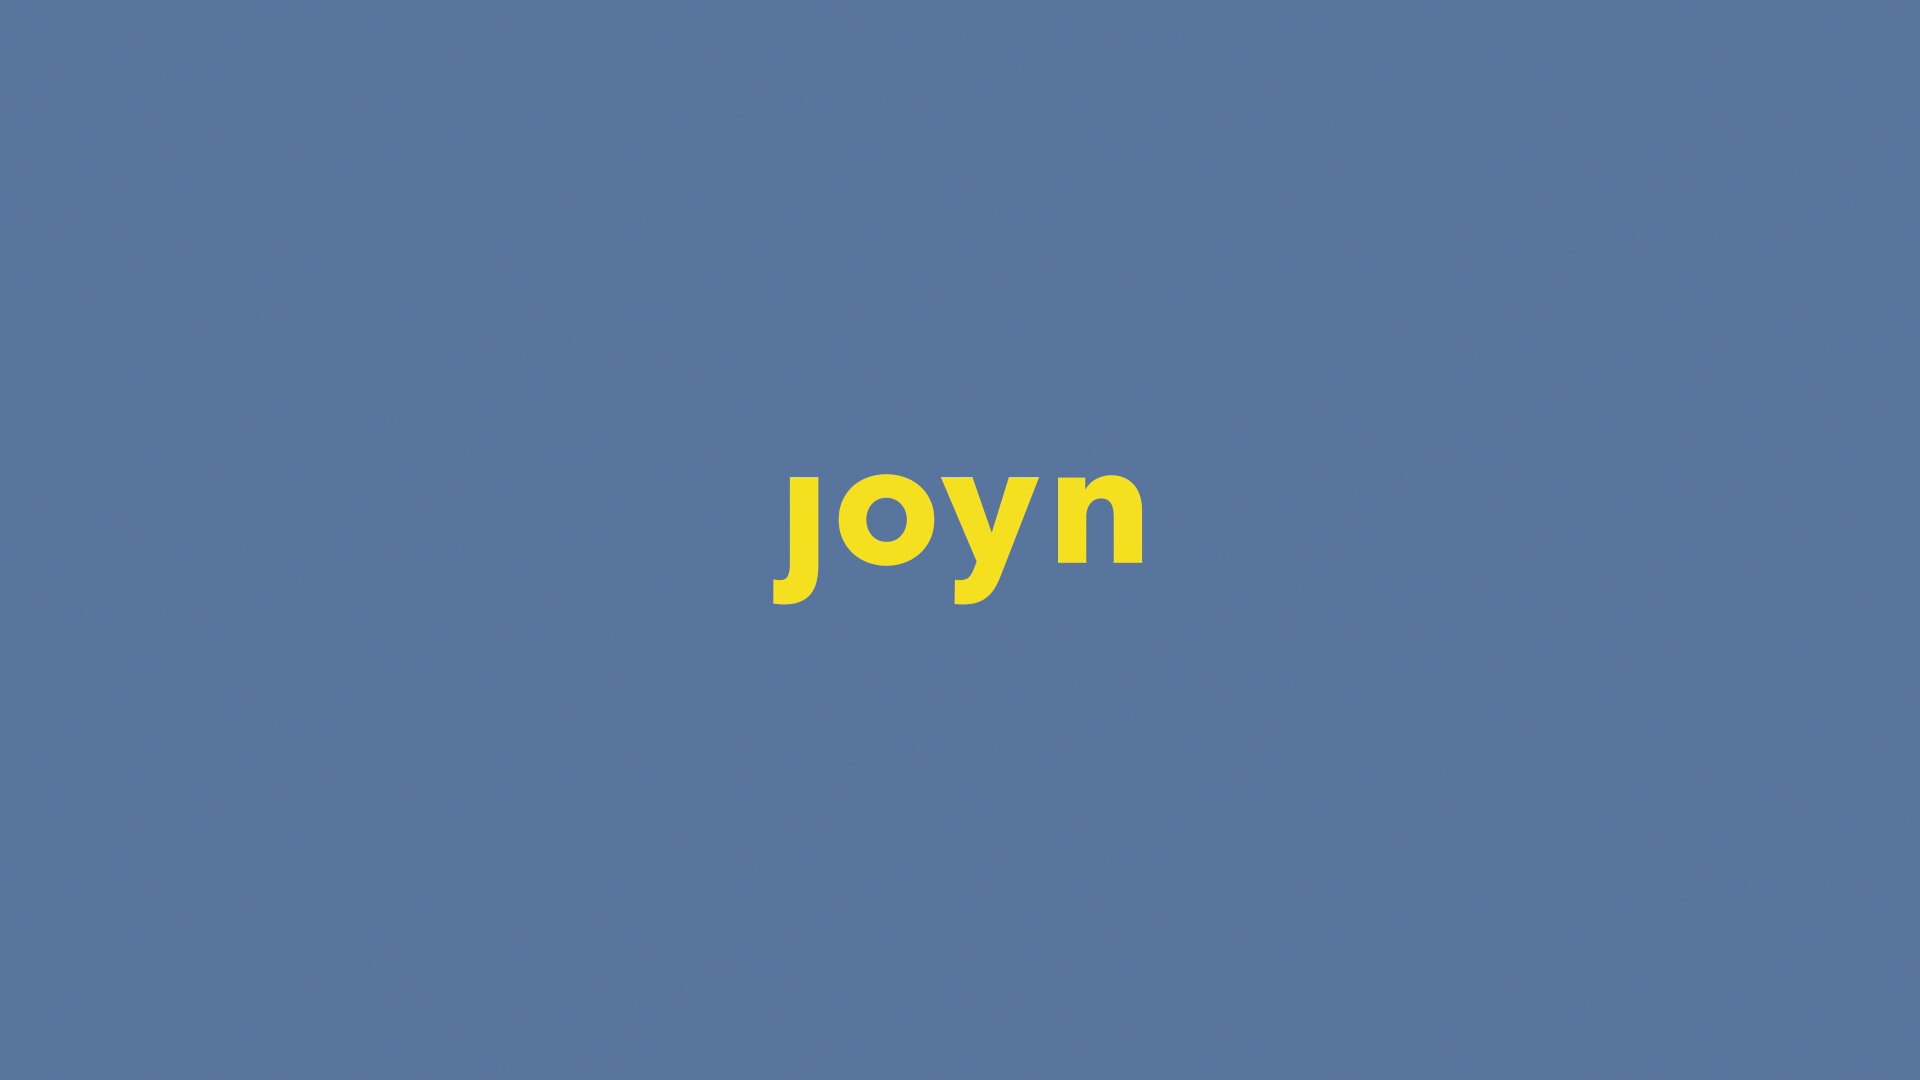 JOYN_4.jpg